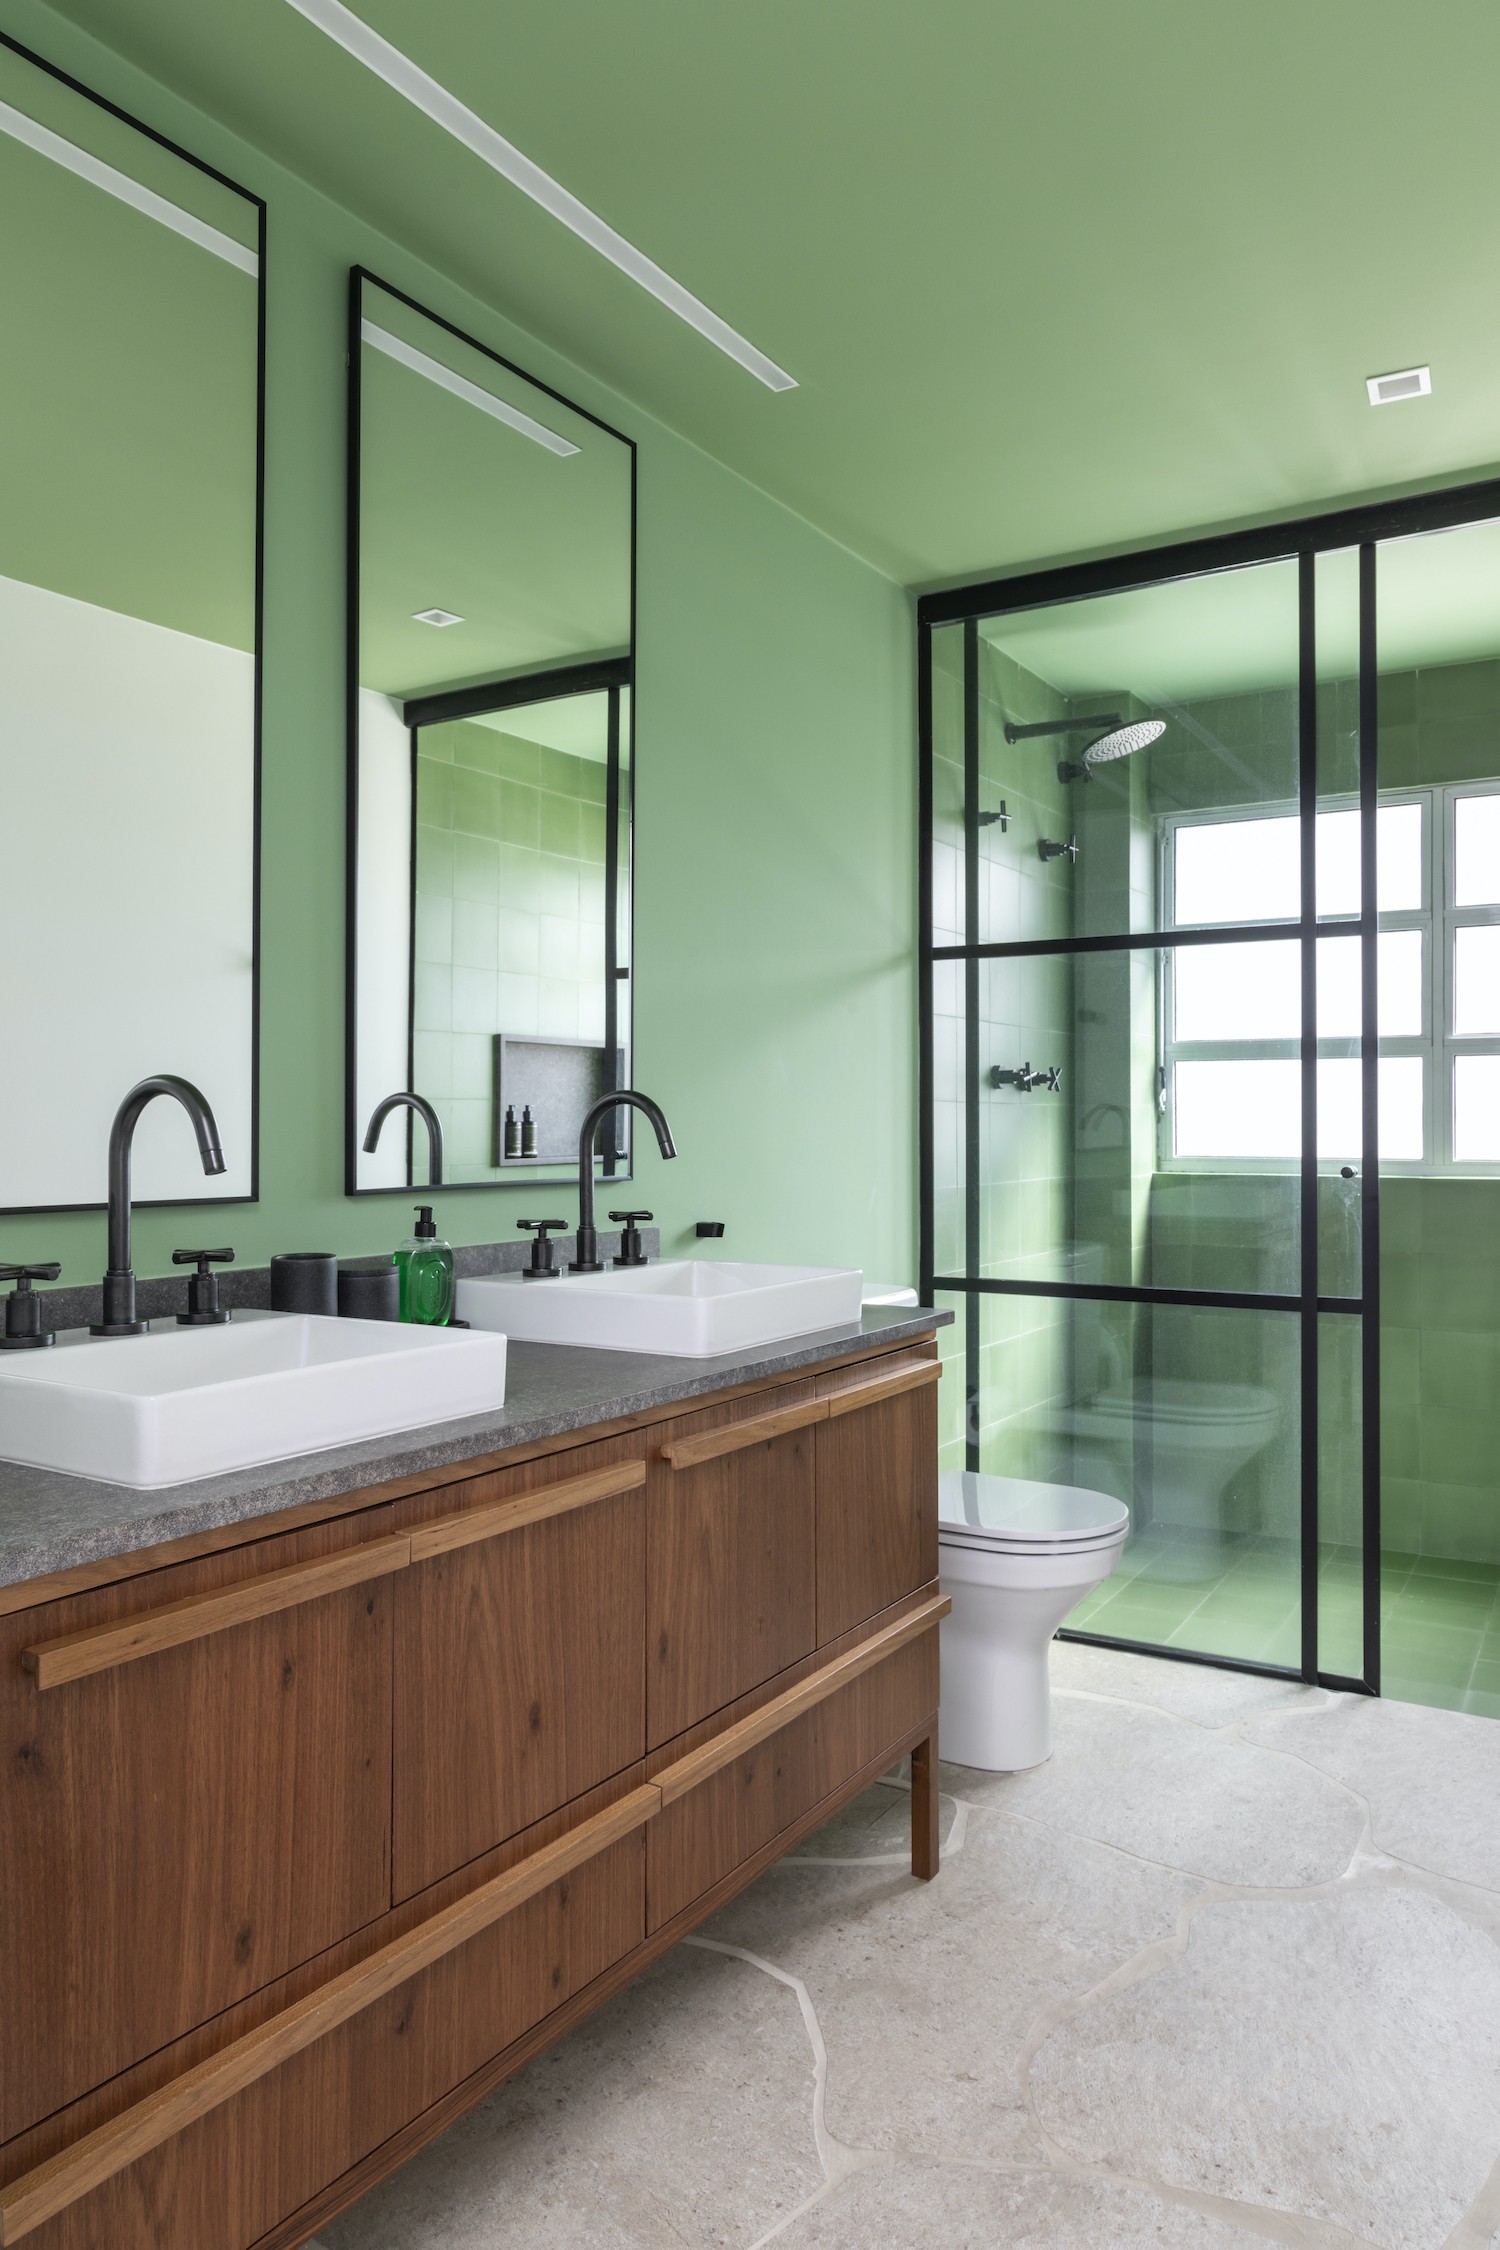 BANHEIRO | O banheiro da suíte master foi pintado em verde e tem metais pretos para contrastar (Foto: Divulgação / Evelyn Muller)